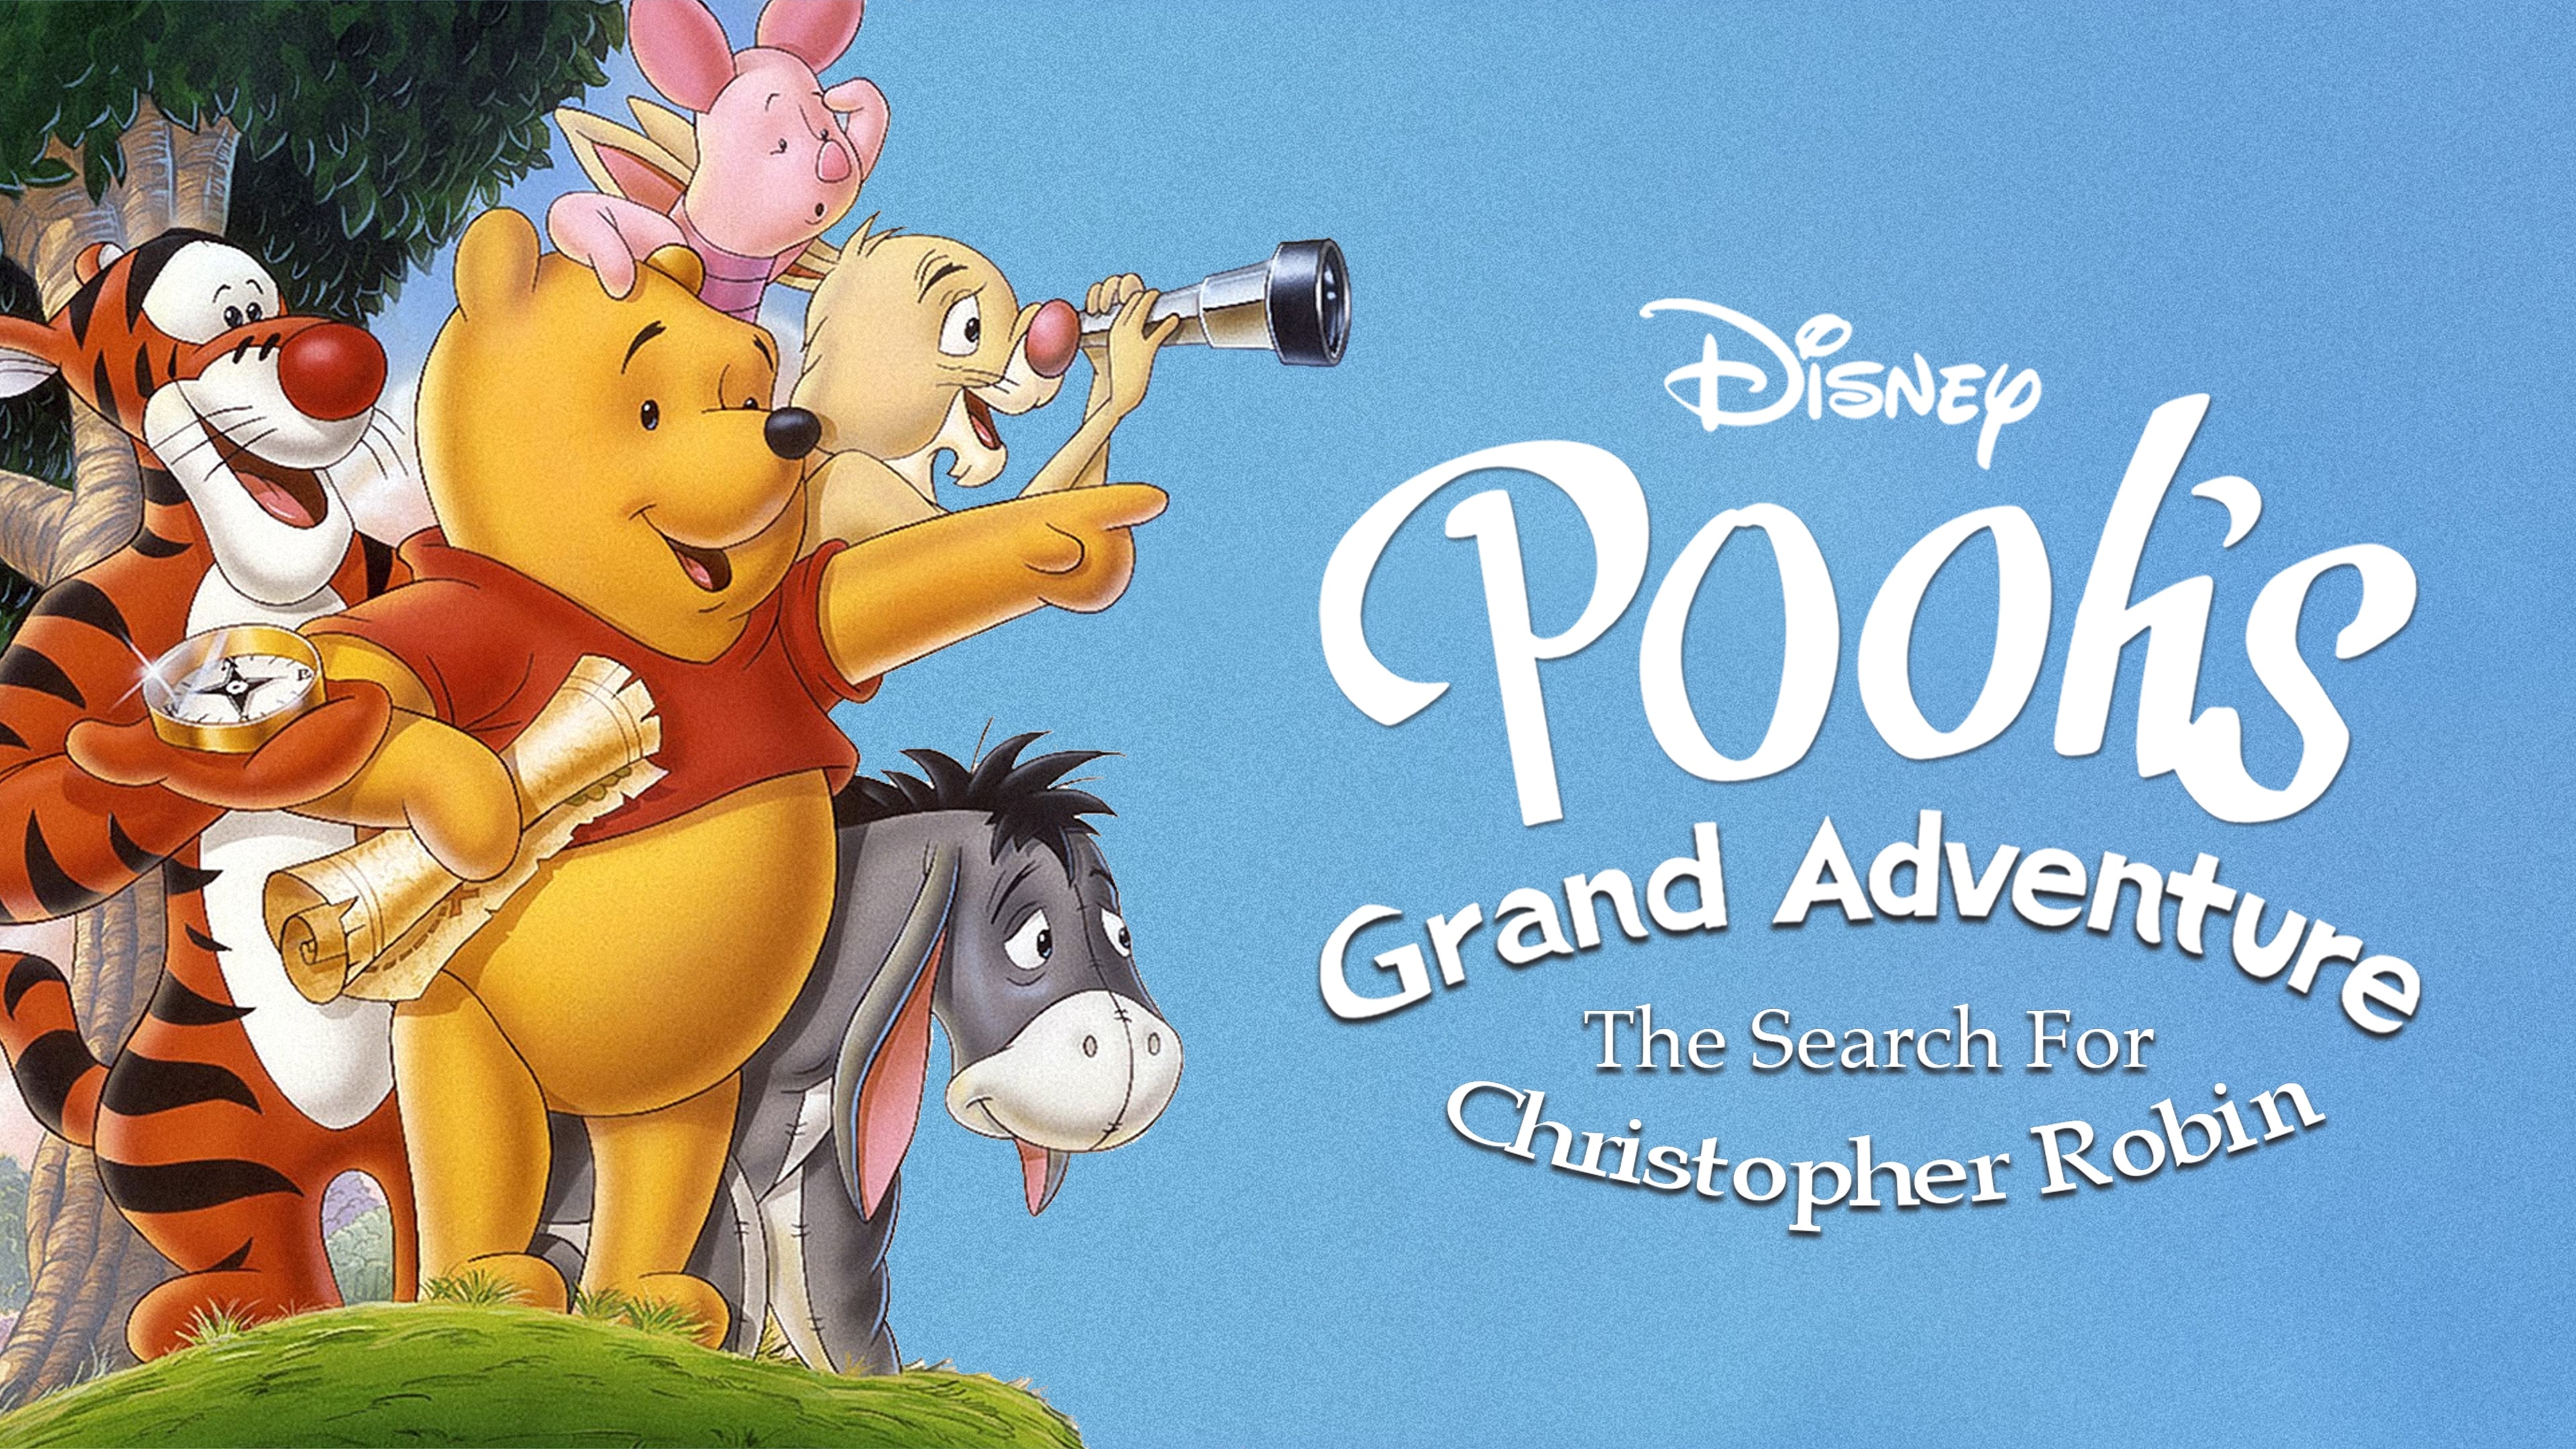 Winnie the Pooh alla ricerca di Christopher Robin (1997)